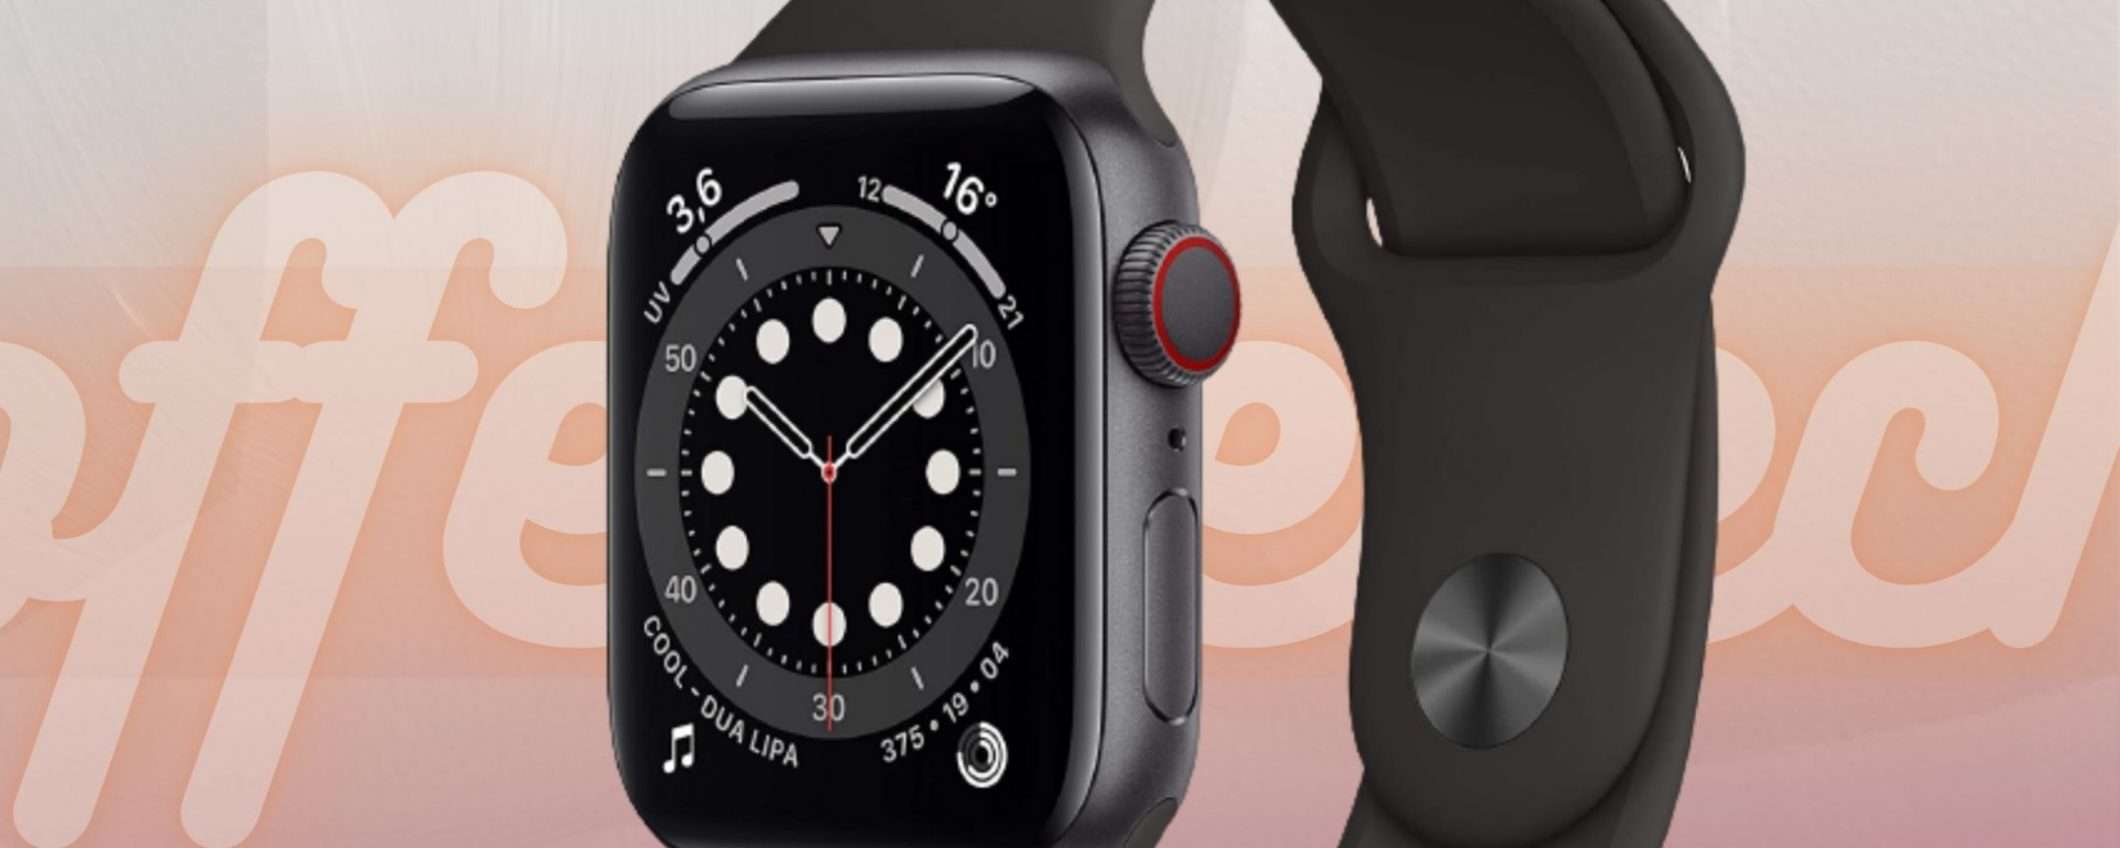 Apple Watch Series 6: lo smartwatch è in offerta